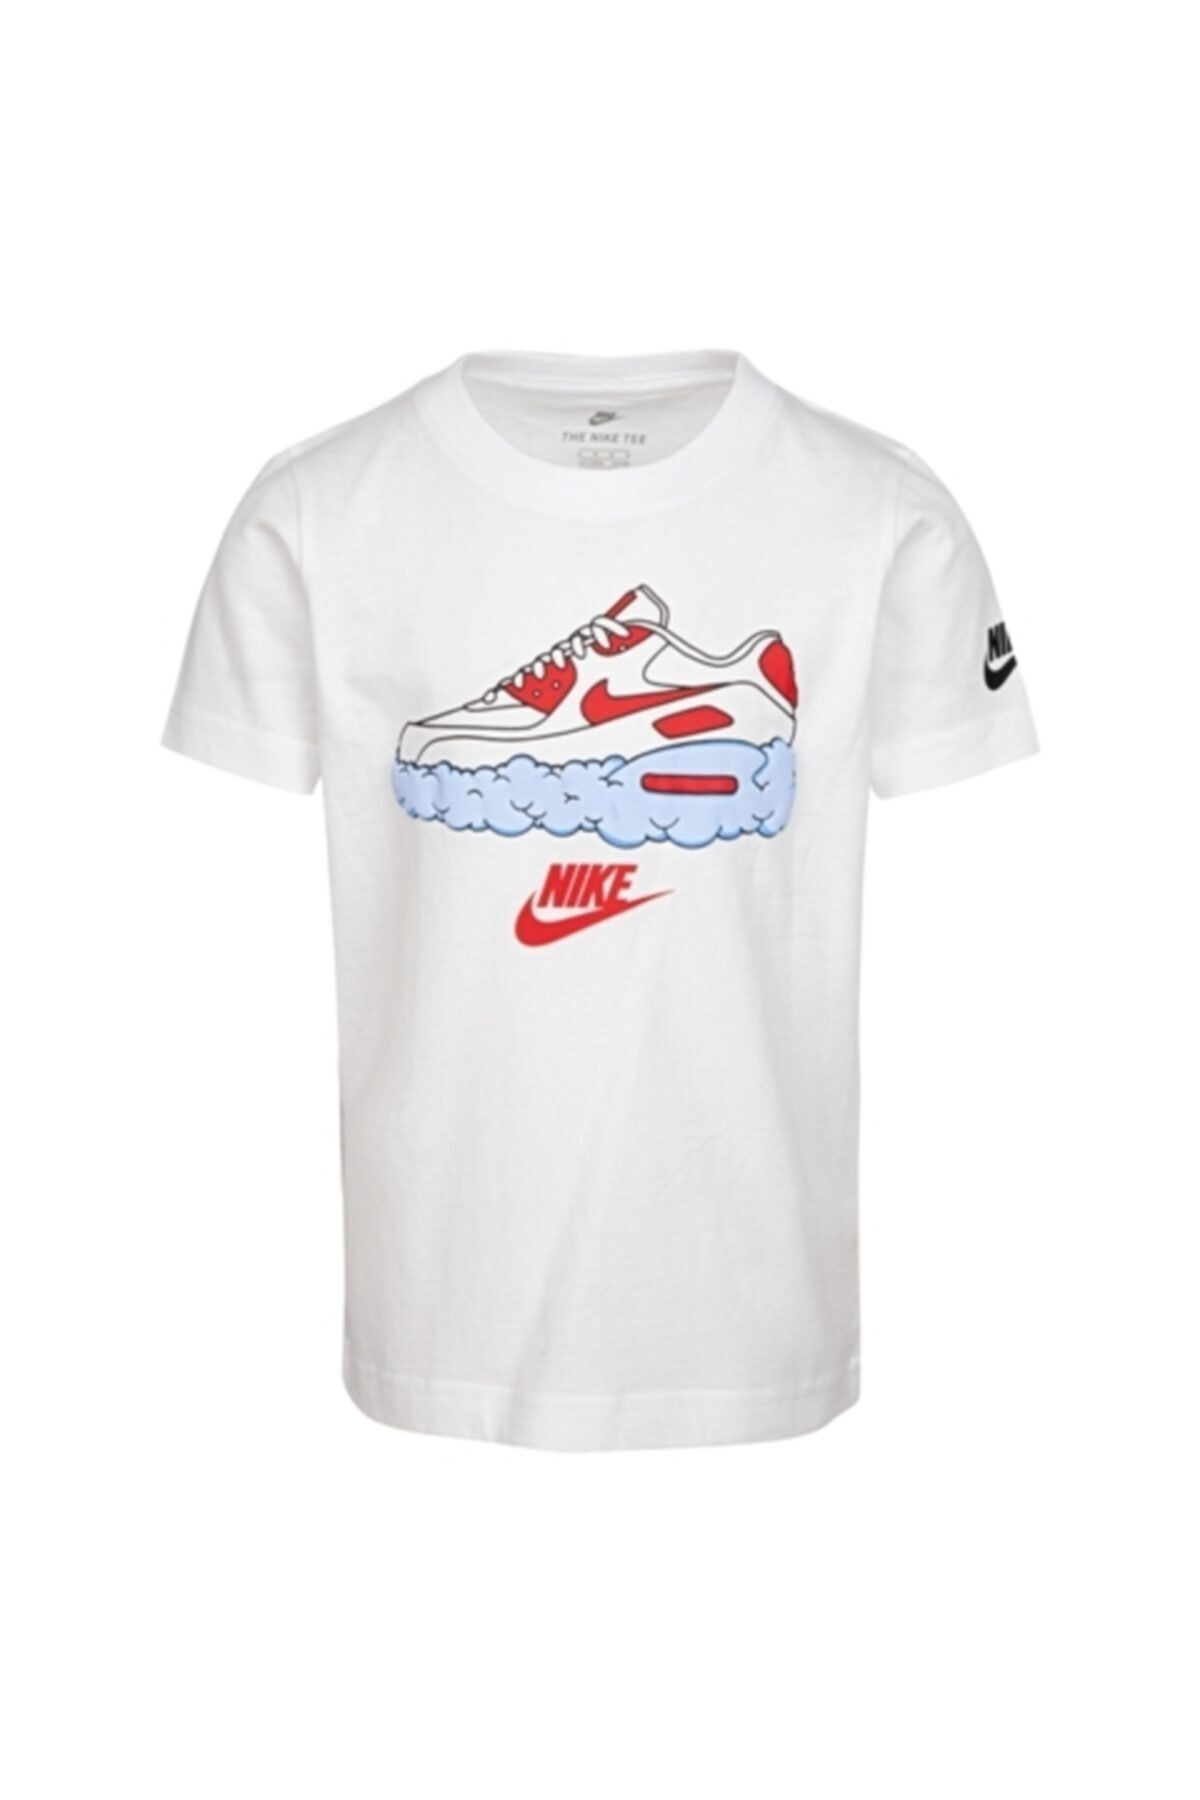 Nike Erkek Çocuk Beyaz T-Shirt 86g233-001